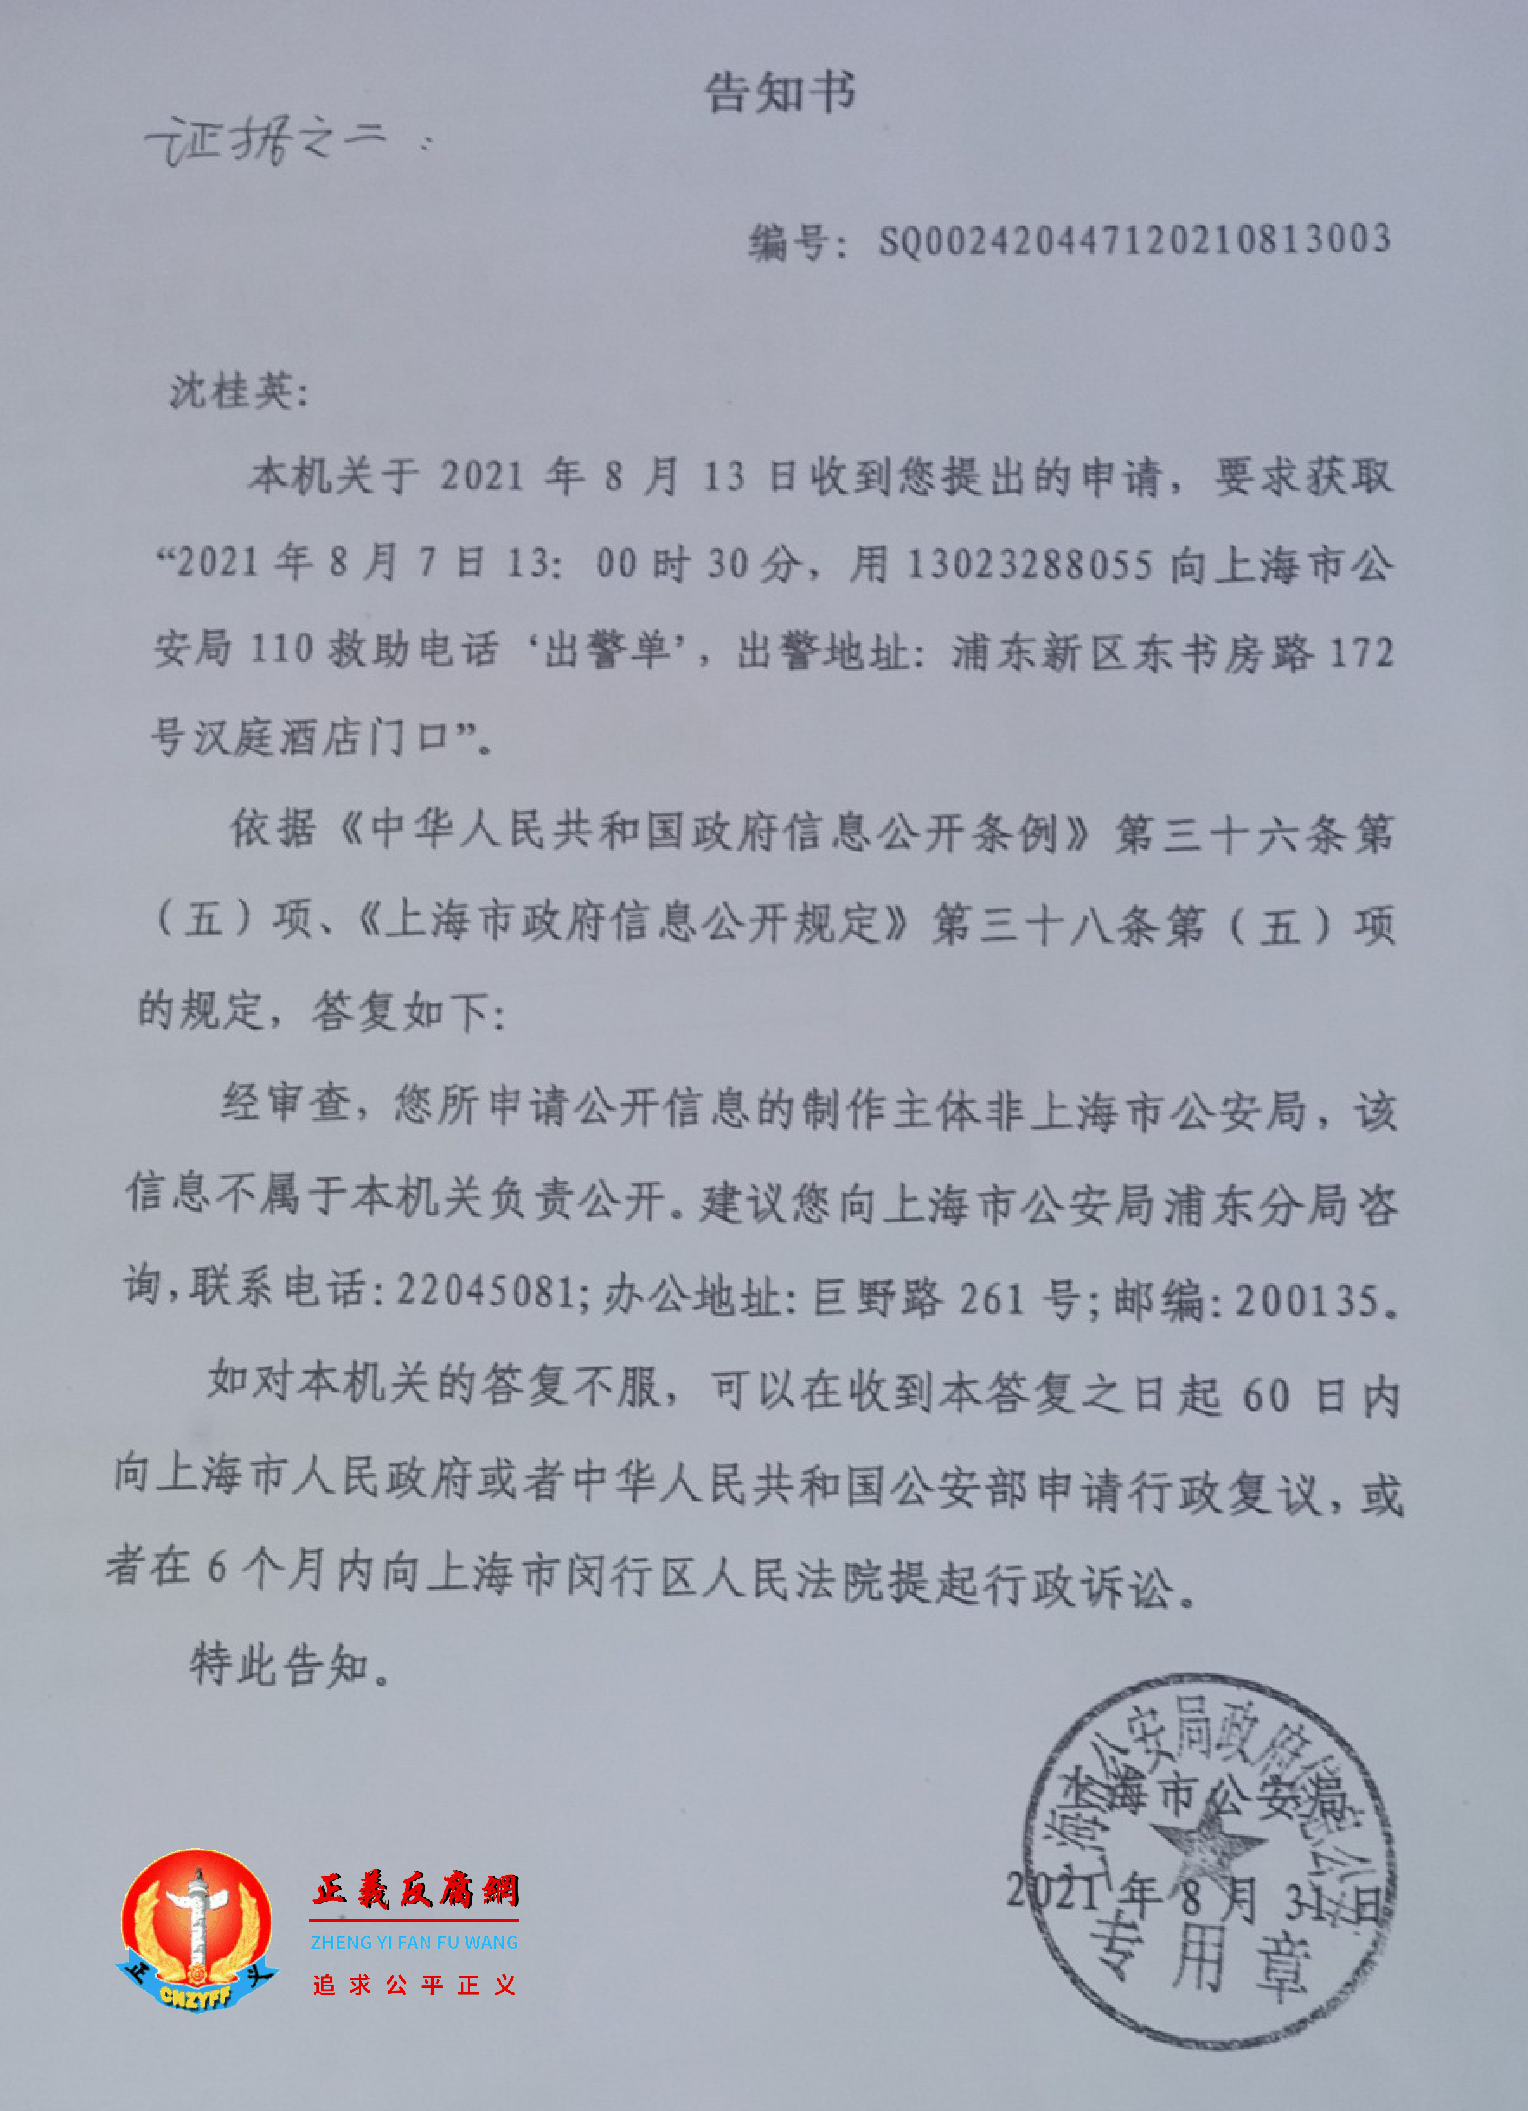 上海市公安局政府信息公开《告知书》给沈桂英。.png